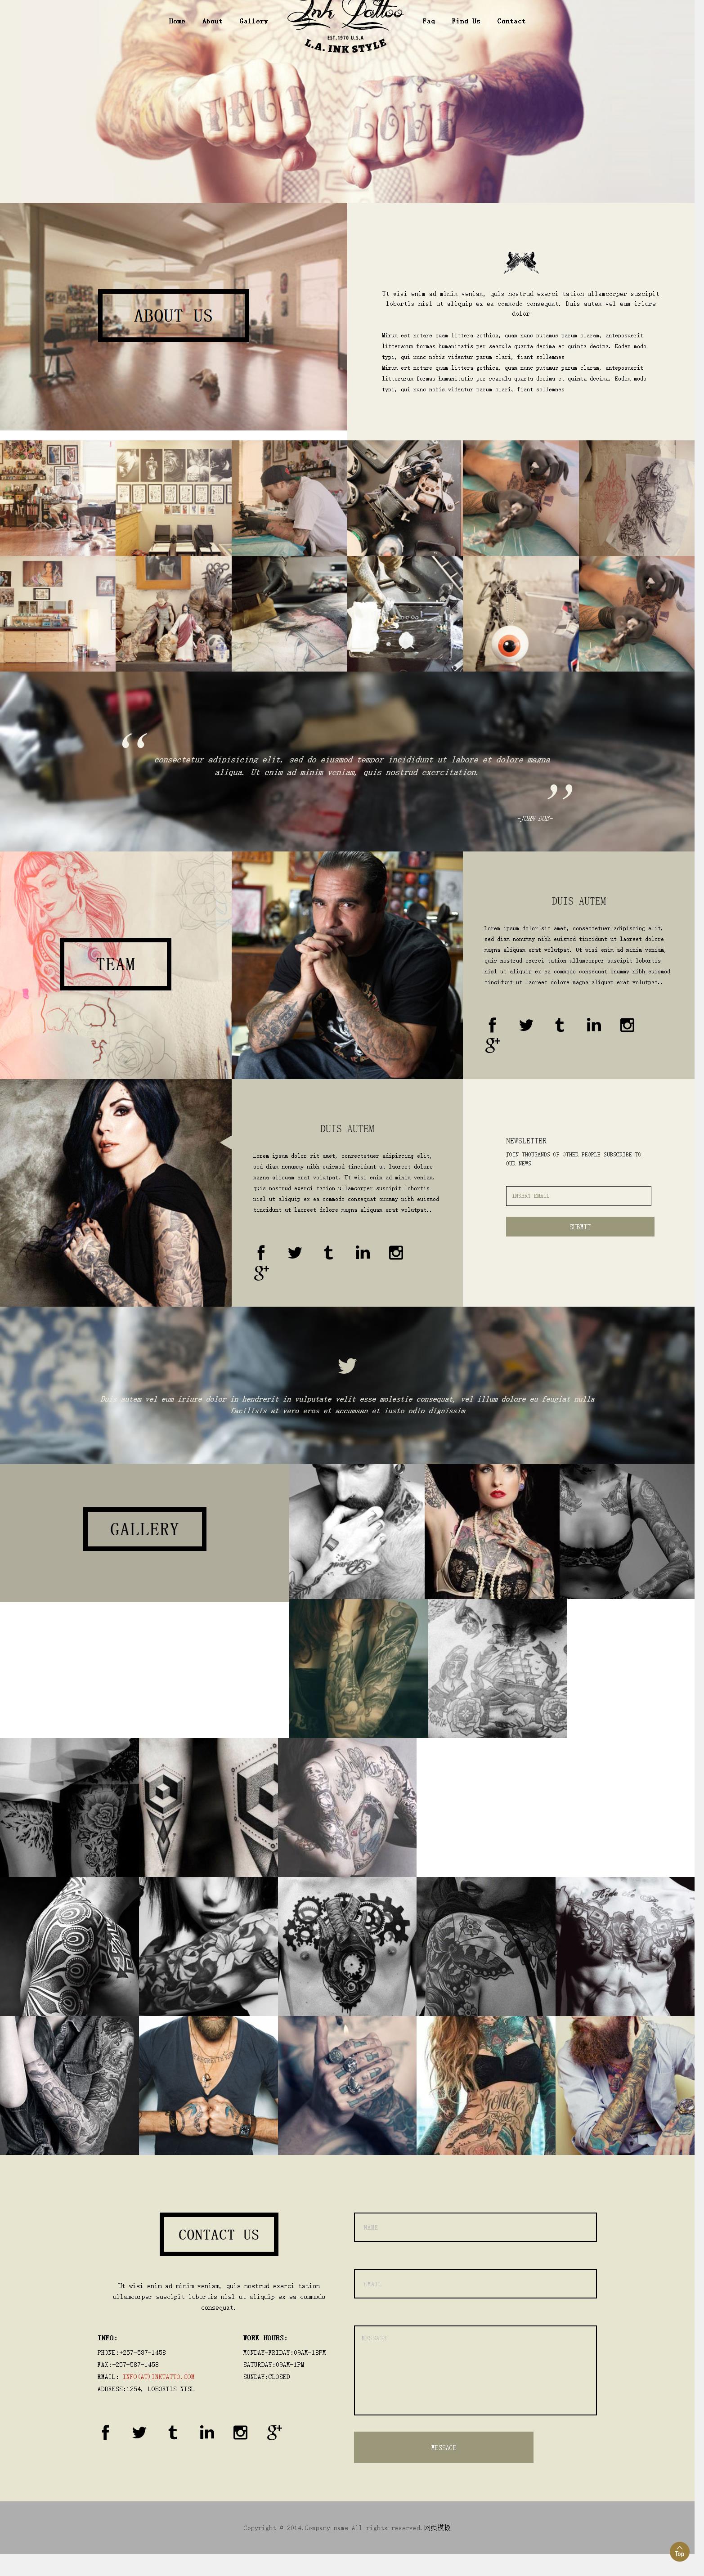 白色个性风格的时尚纹身艺术网站模板下载